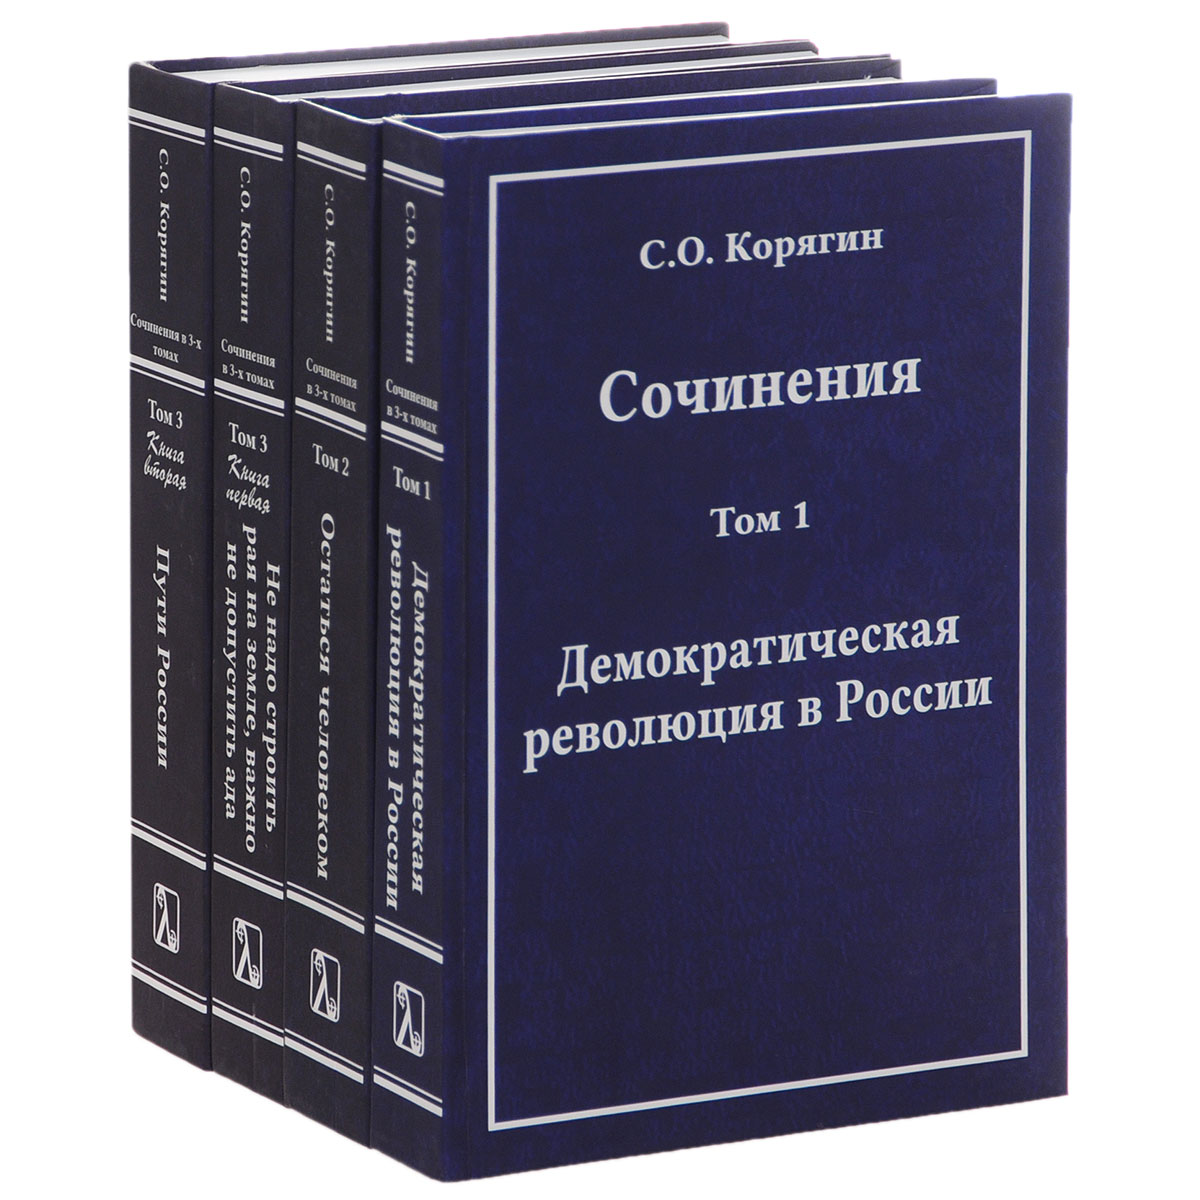 Сочинения С. О. Корягина. В 3 томах (комплект из 4 книг)